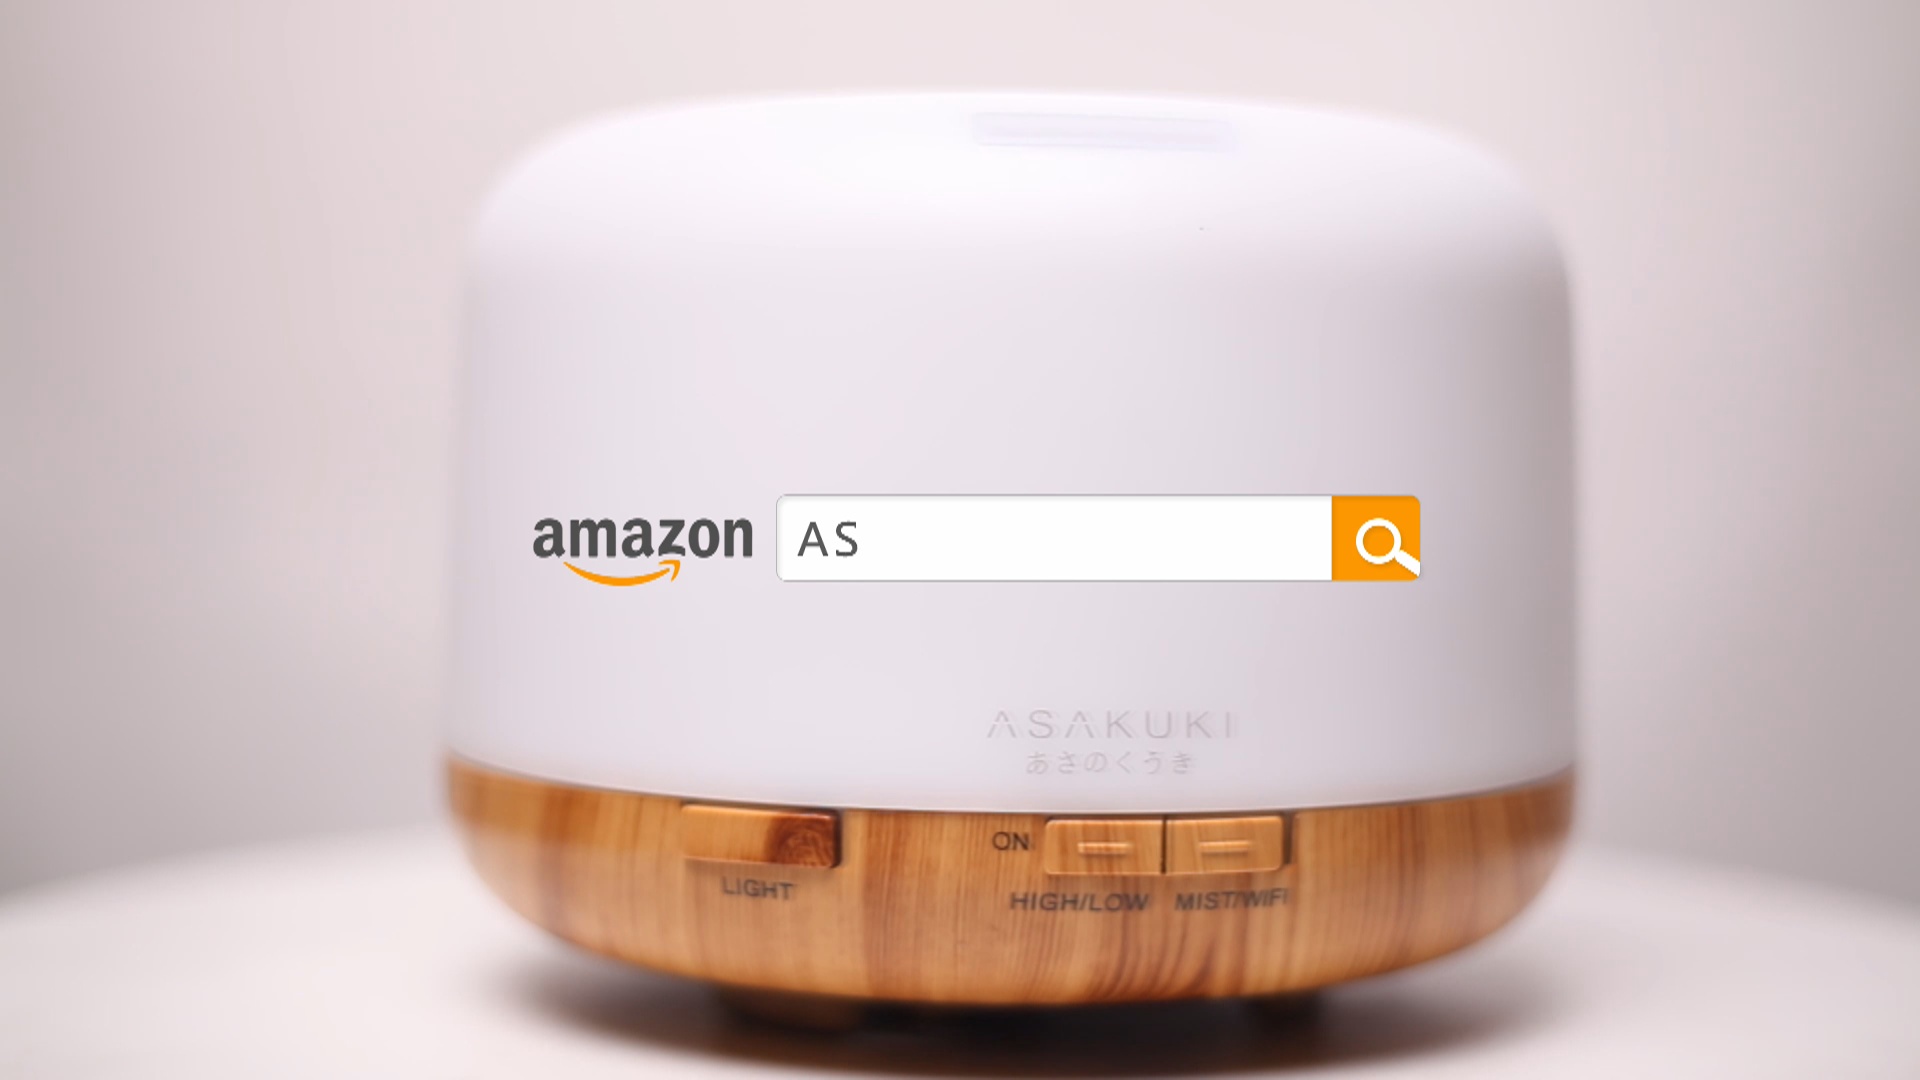 ASAKUKI加湿器Wifi智能语音控制香薰机亚马逊电商视频拍摄